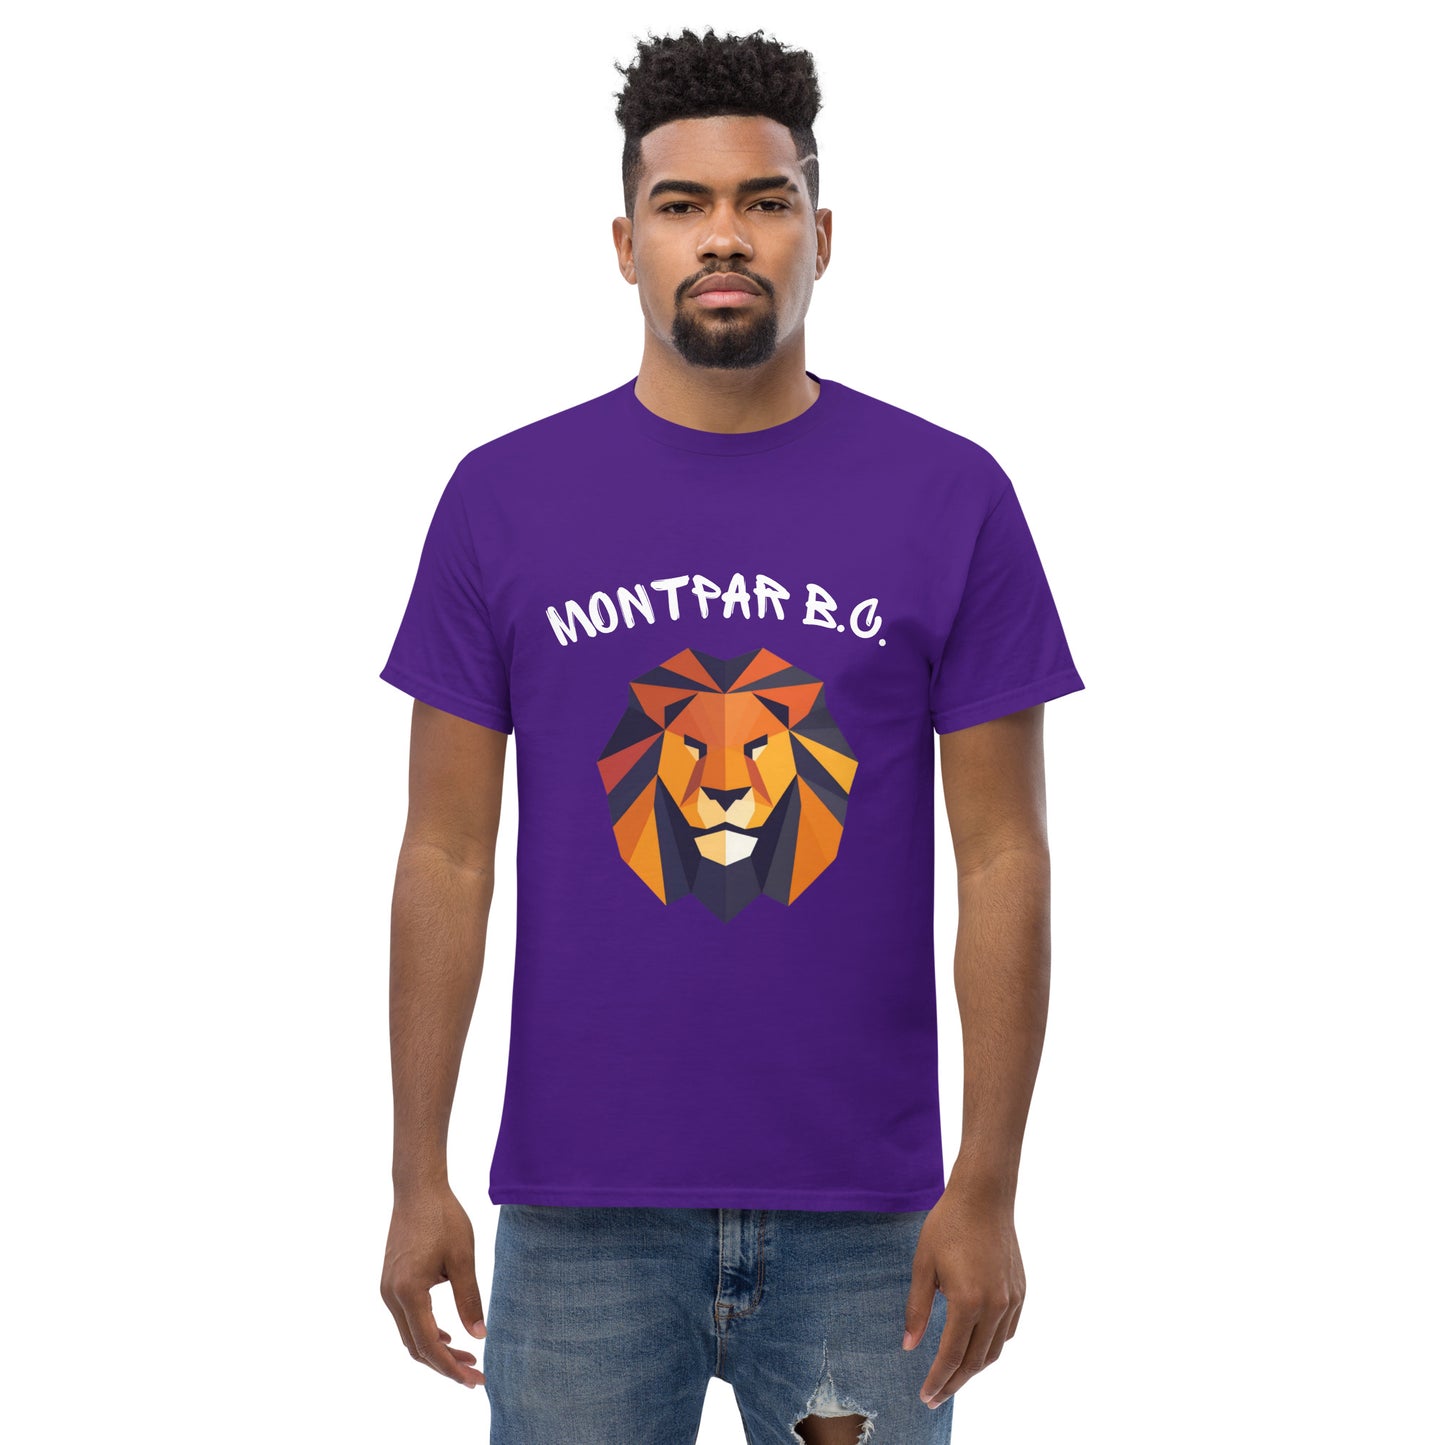 MONTPAR BC - T-shirt classique homme